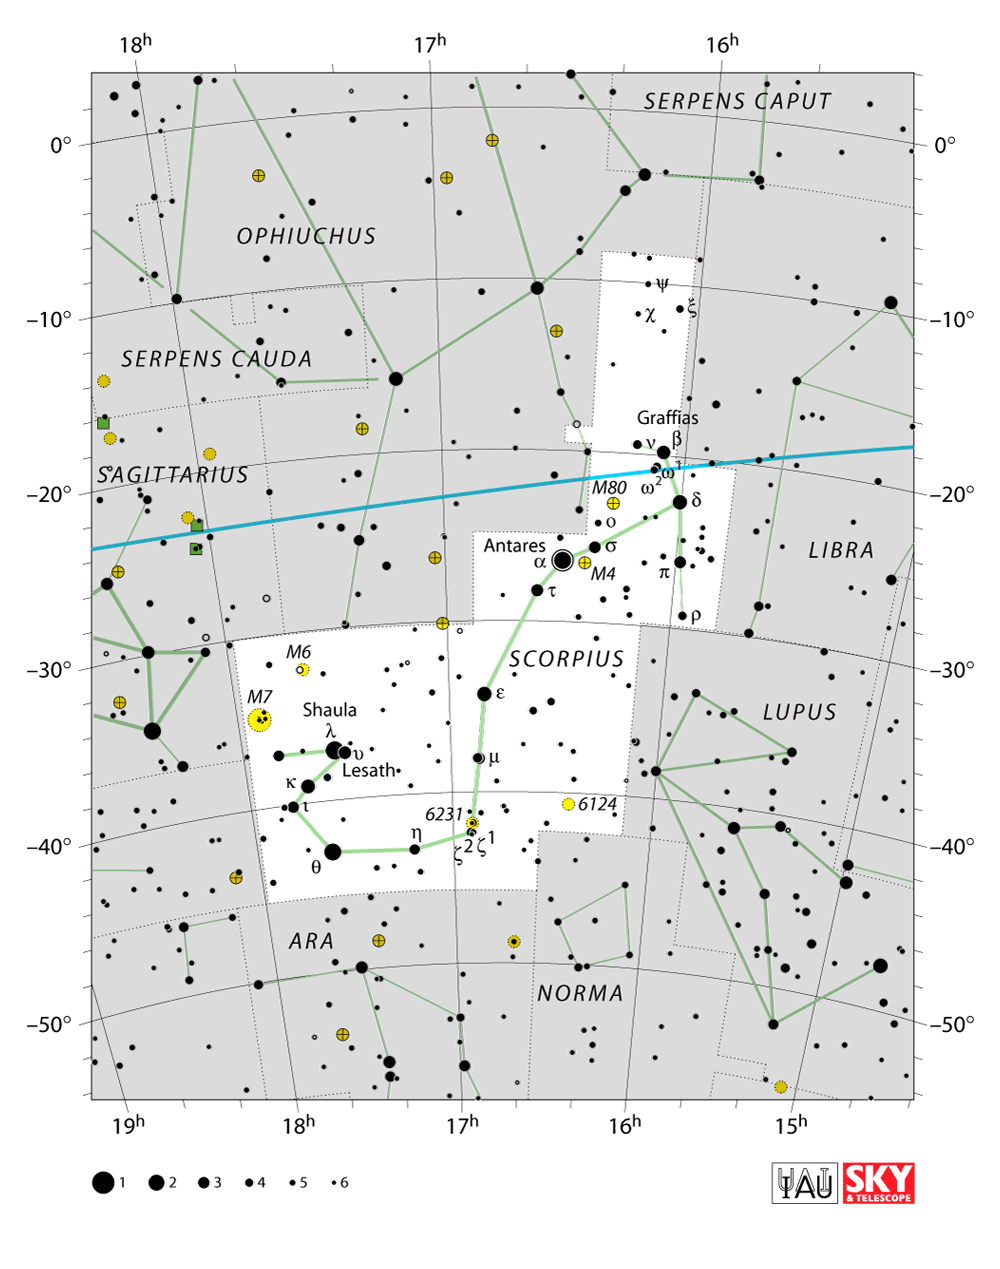 Scorpius constellation chart